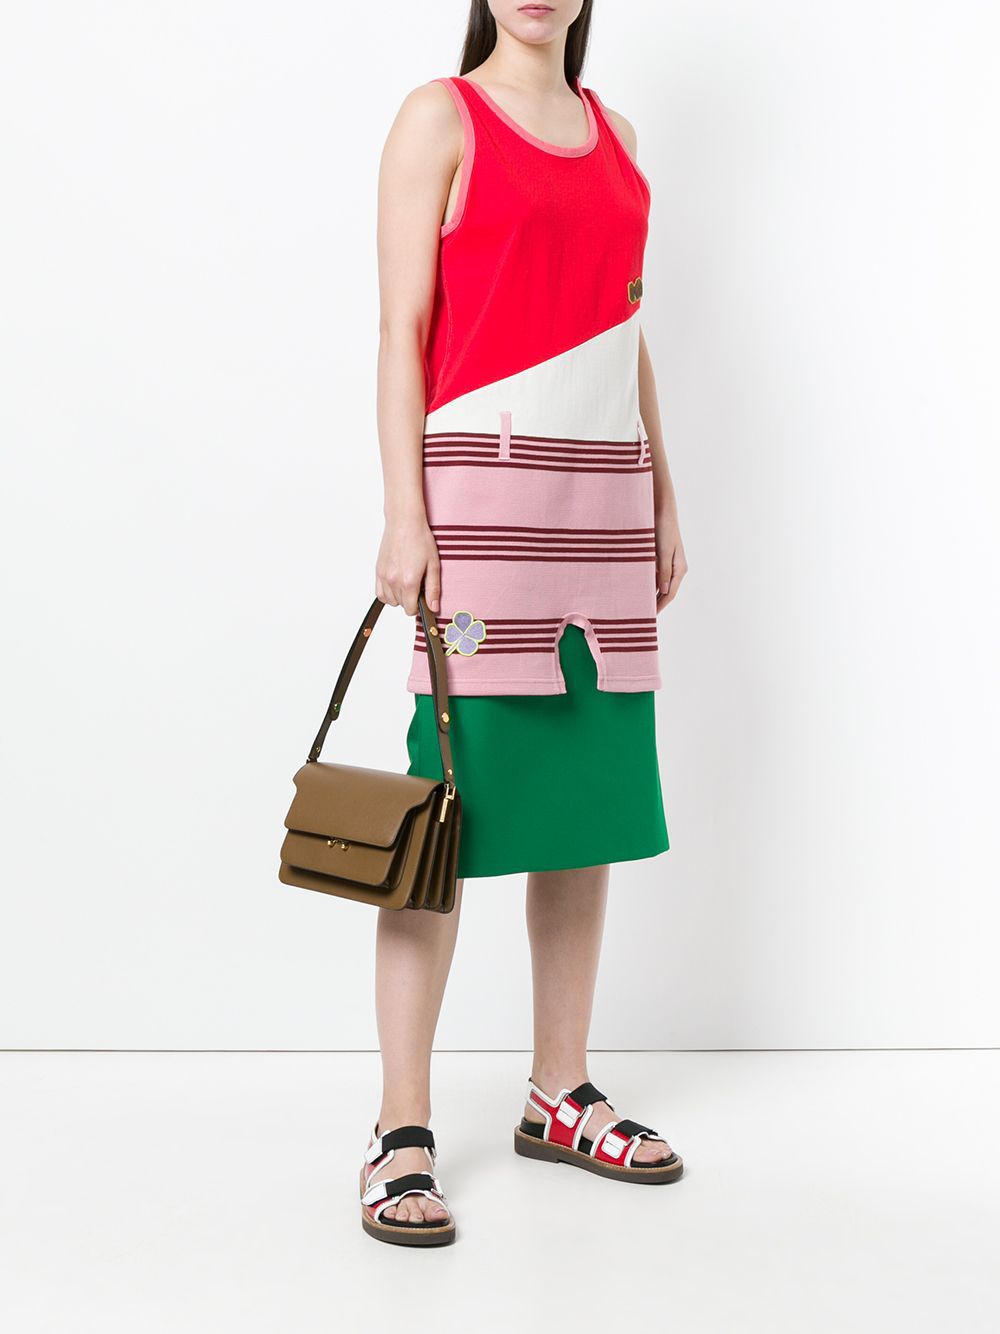 Marni Trunk - Shoulder bag for Woman - Brown - SBMP0121U0LV589